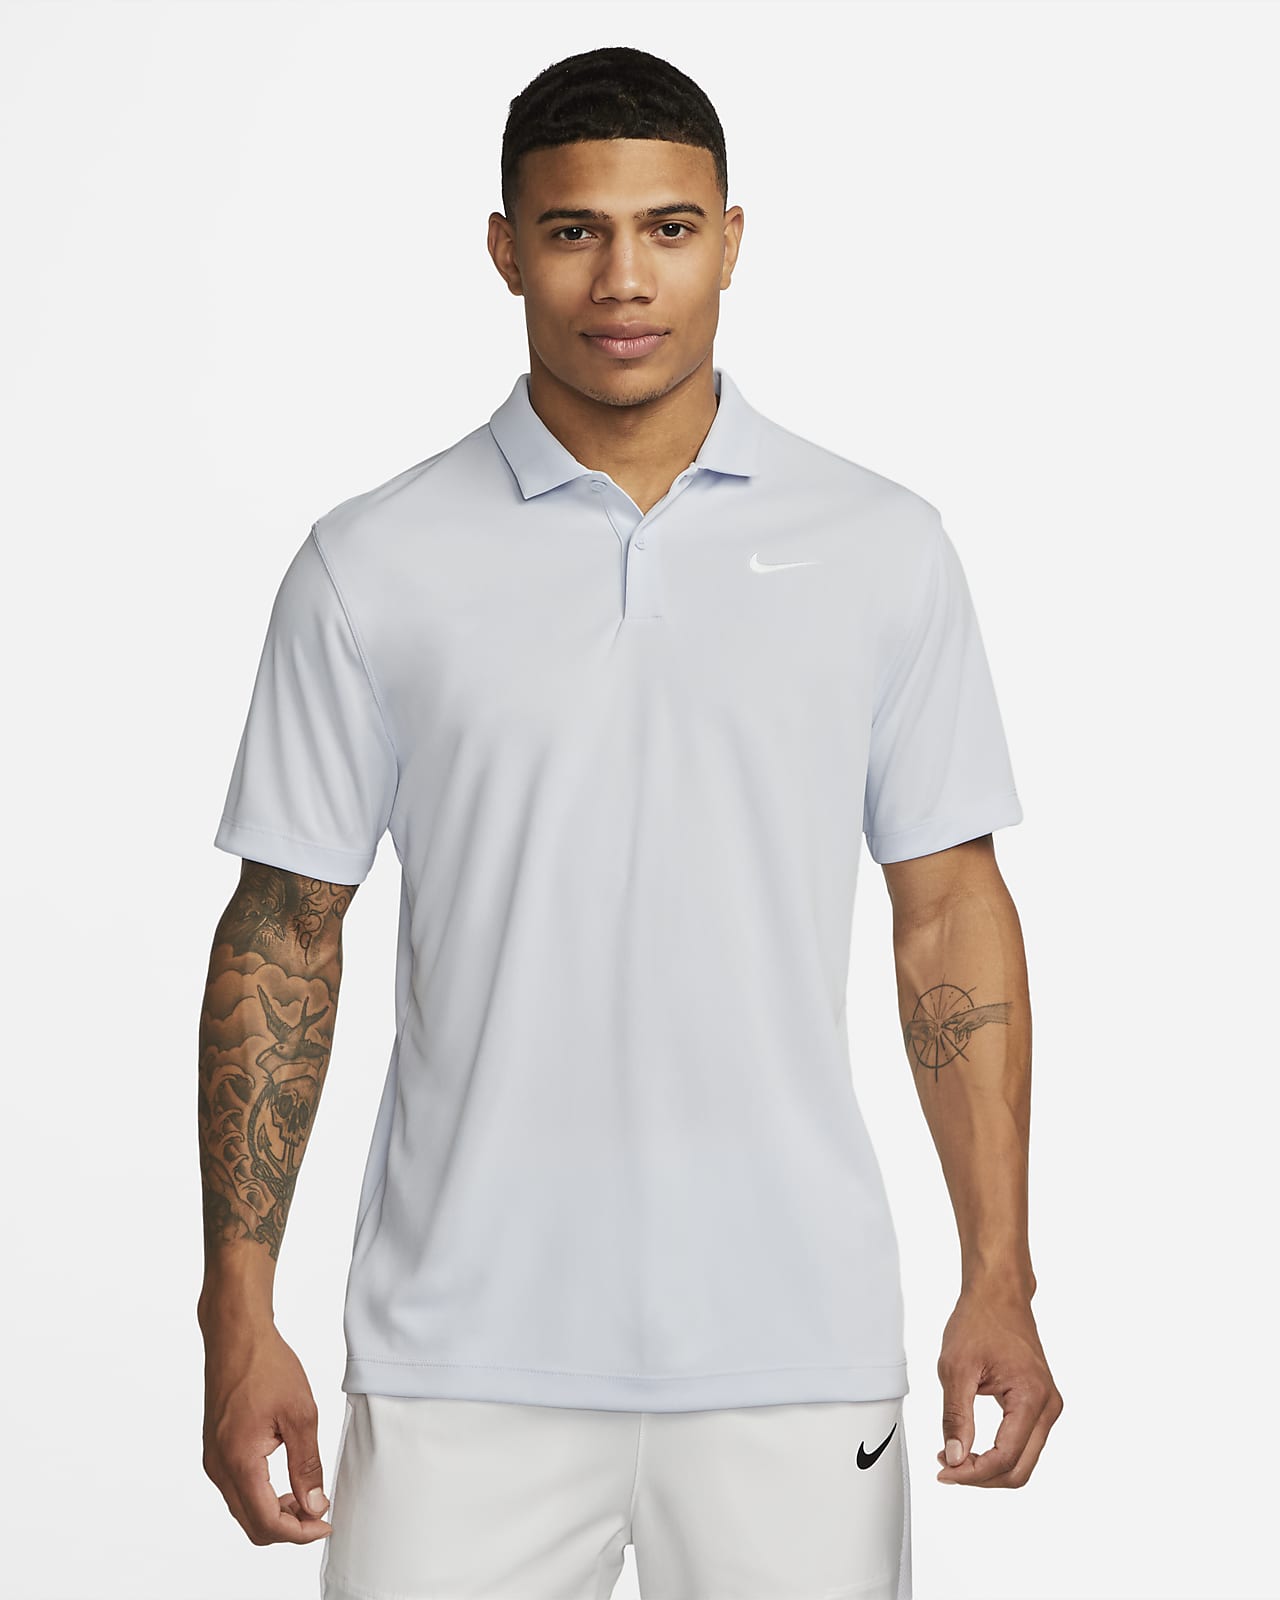 NikeCourt Dri-FIT Tennis-Poloshirt für Herren